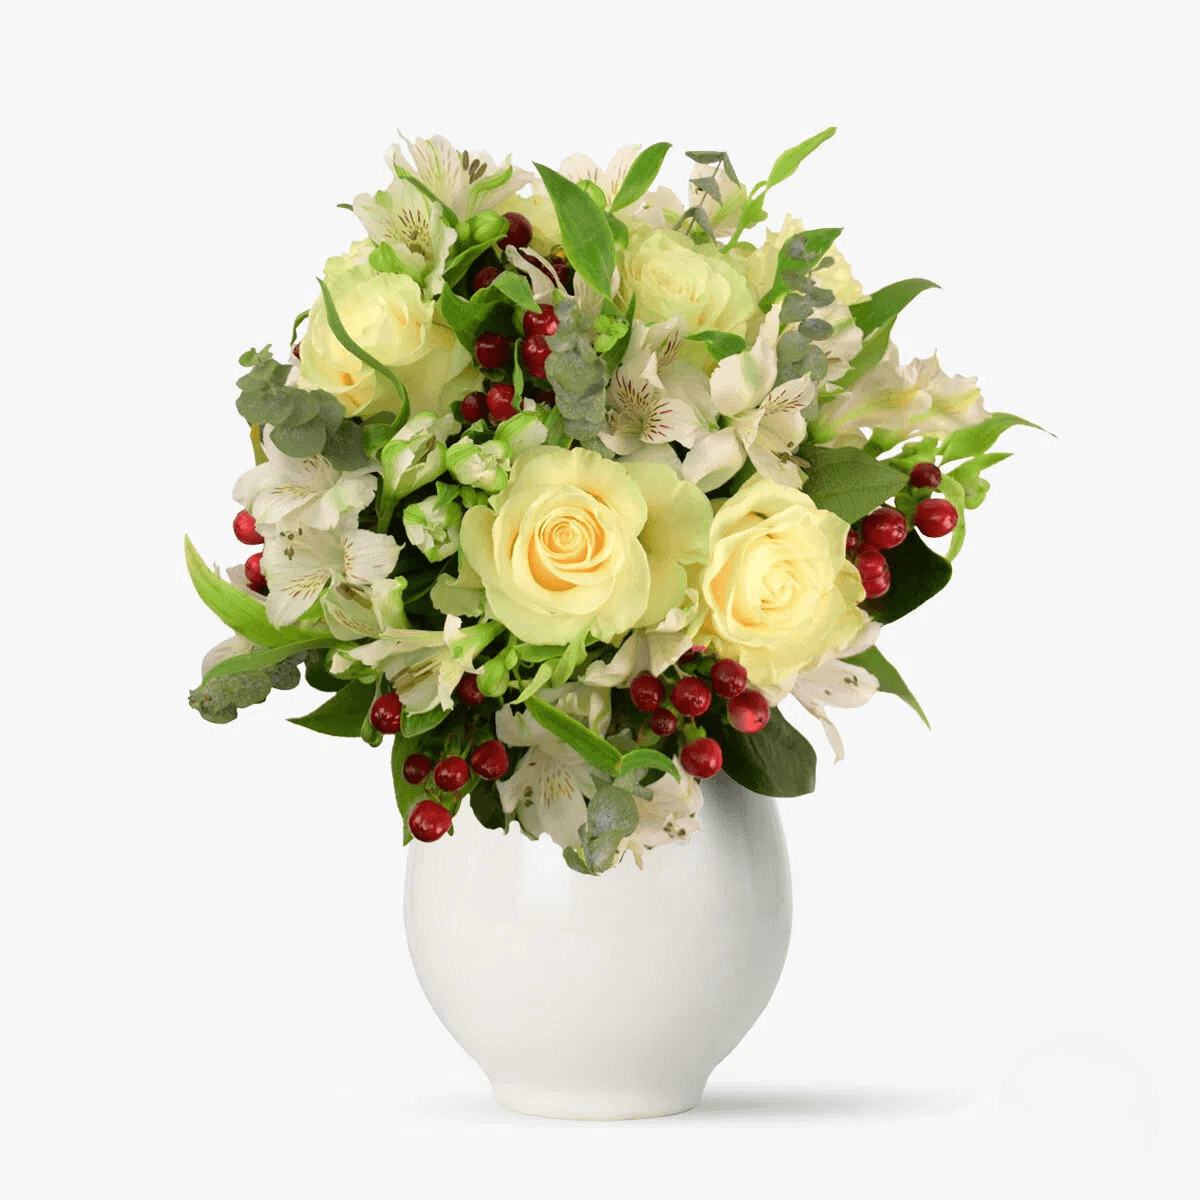 Buchet cu flori albe – Standard albe